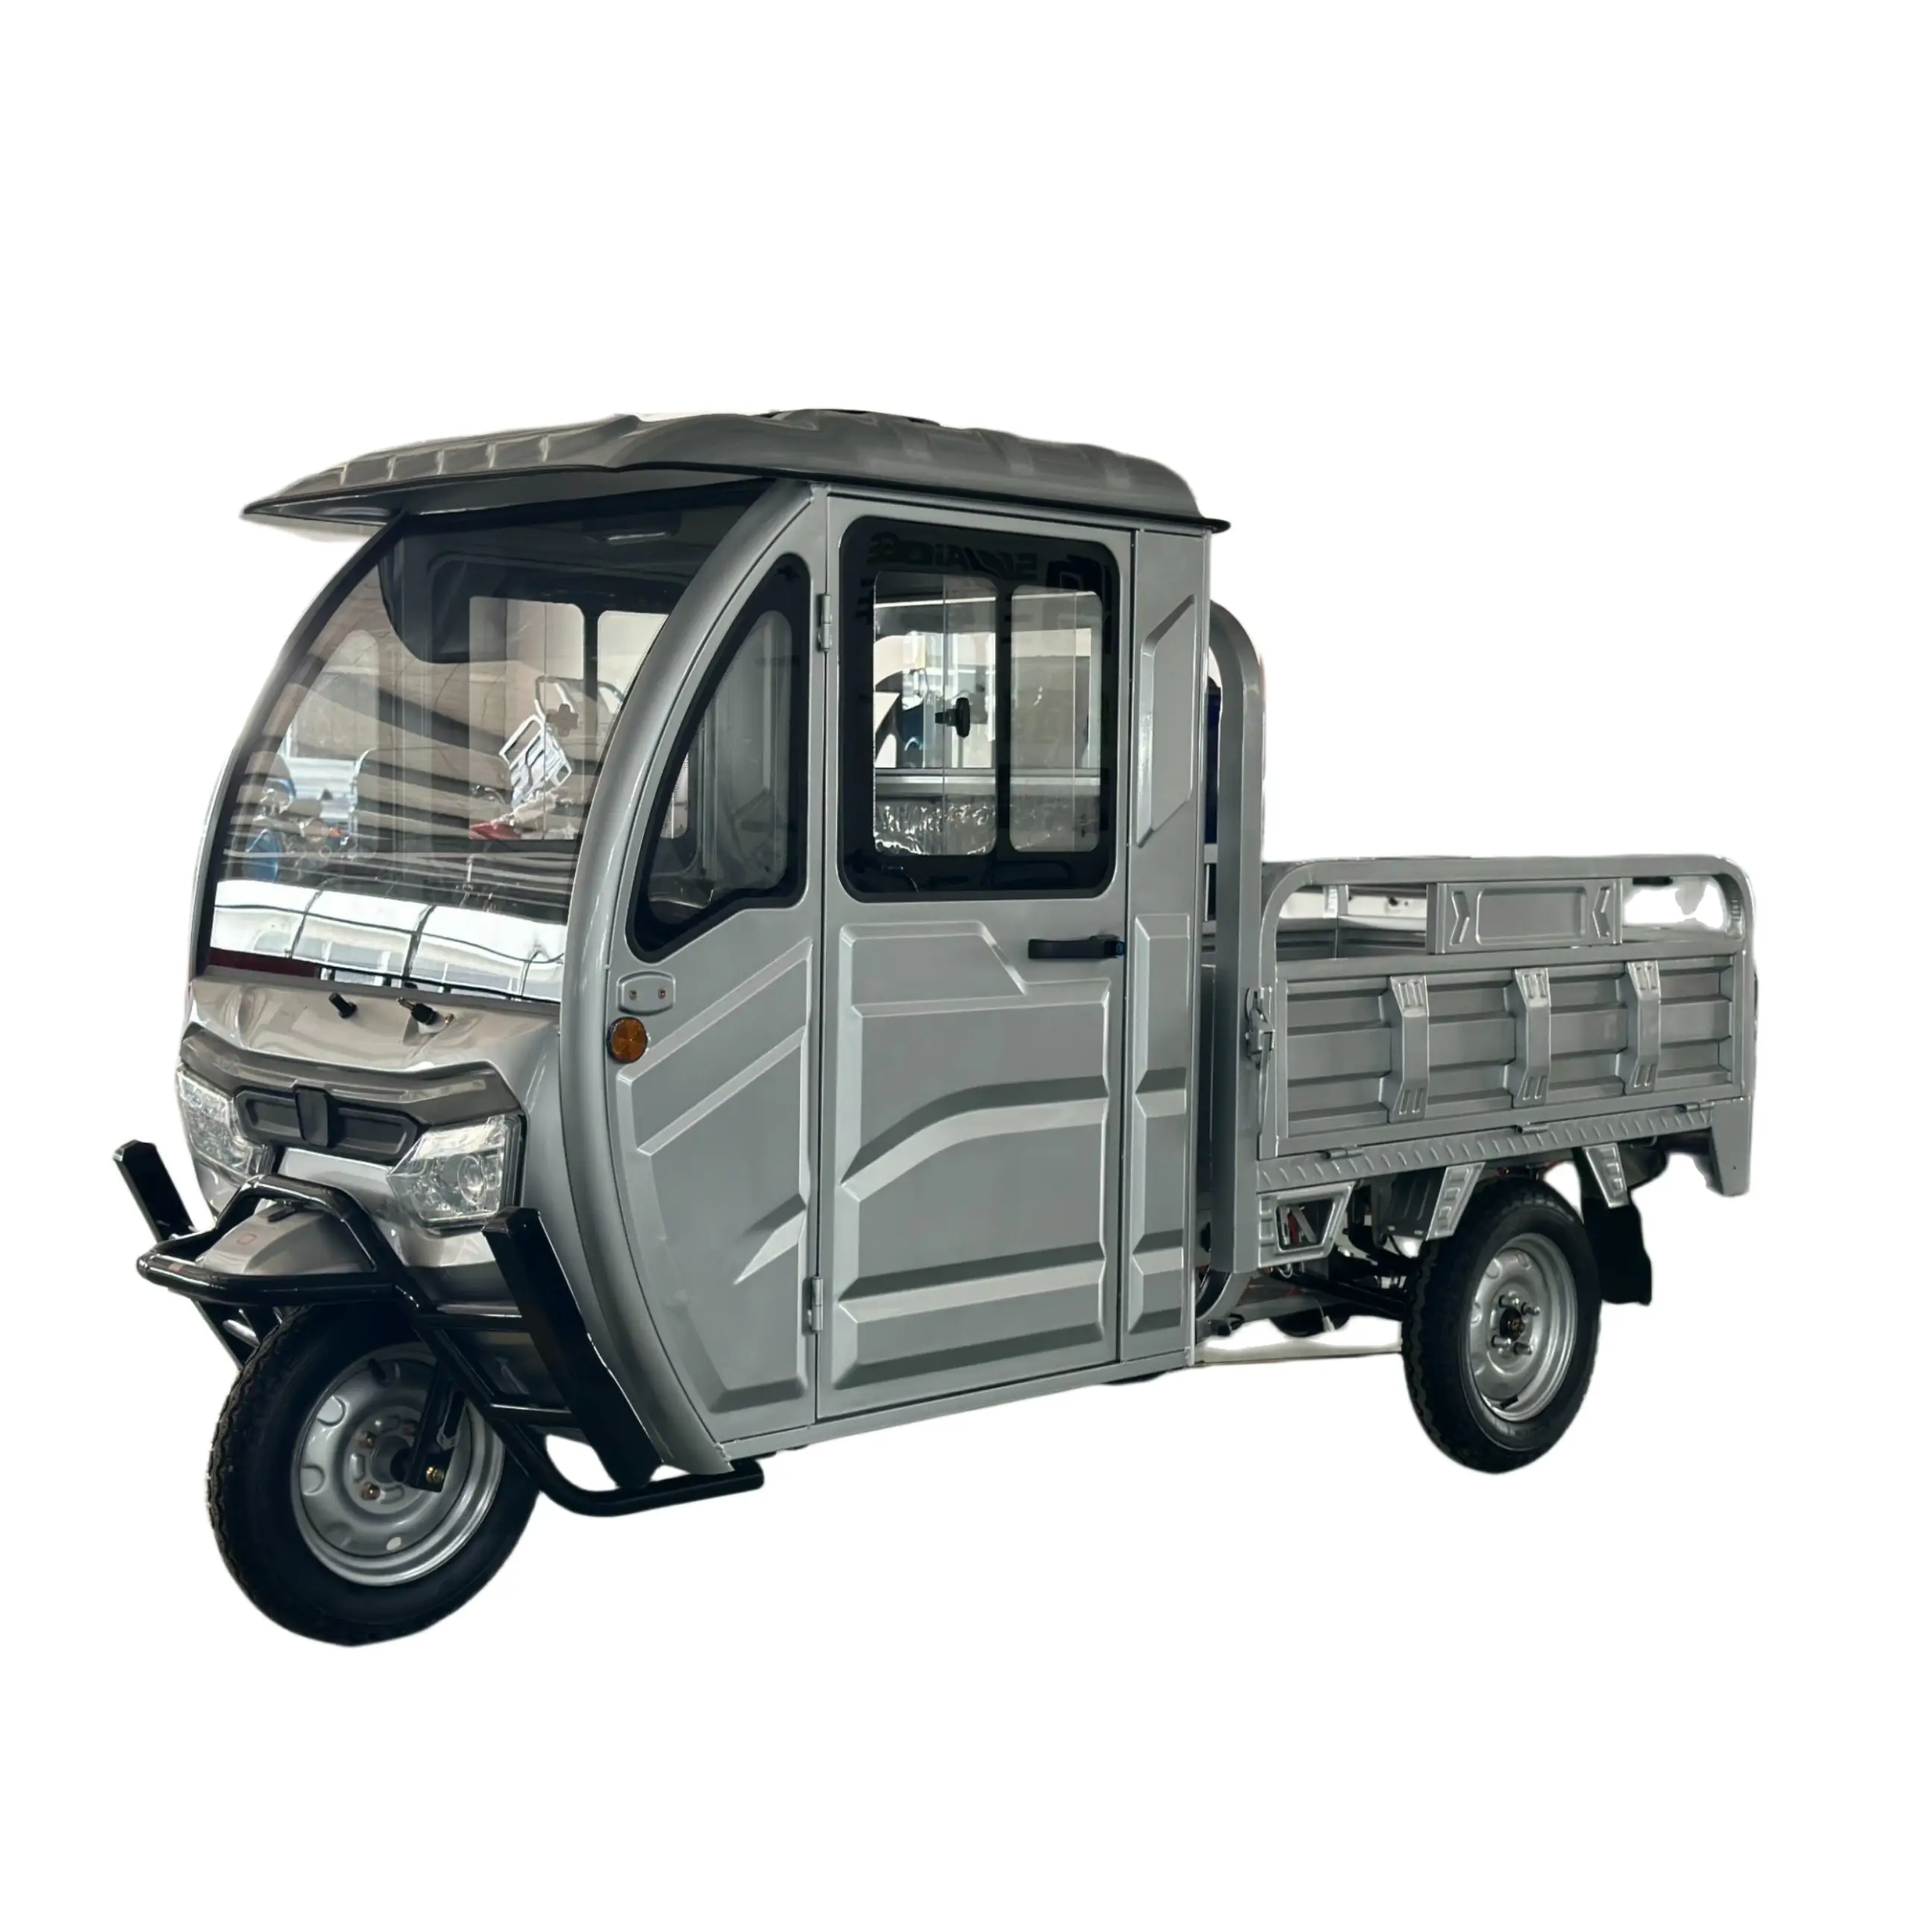 Saige EEC COC e cargo triciclo 2000W 3000W eléctrico 3 ruedas camioneta China cargo triciclo